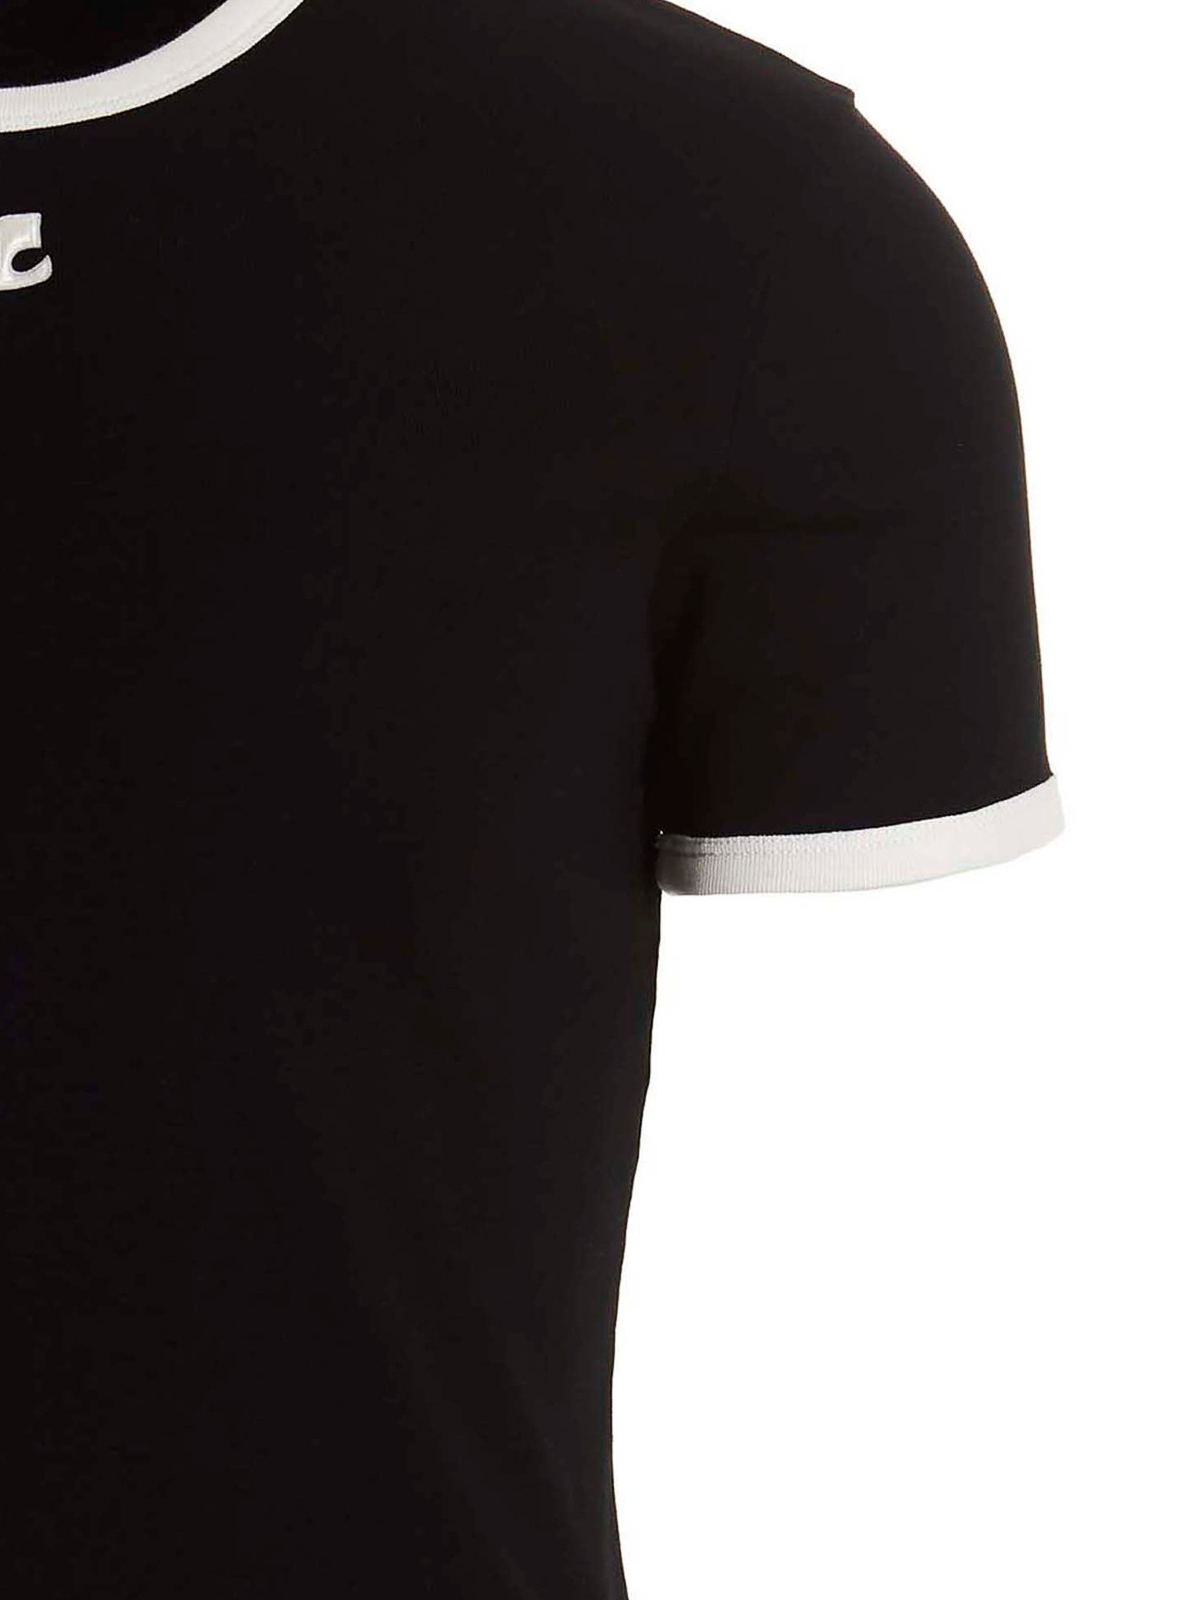 T-shirts Courreges - T-shirt bumpy contrast - PERJTS020JS00709901